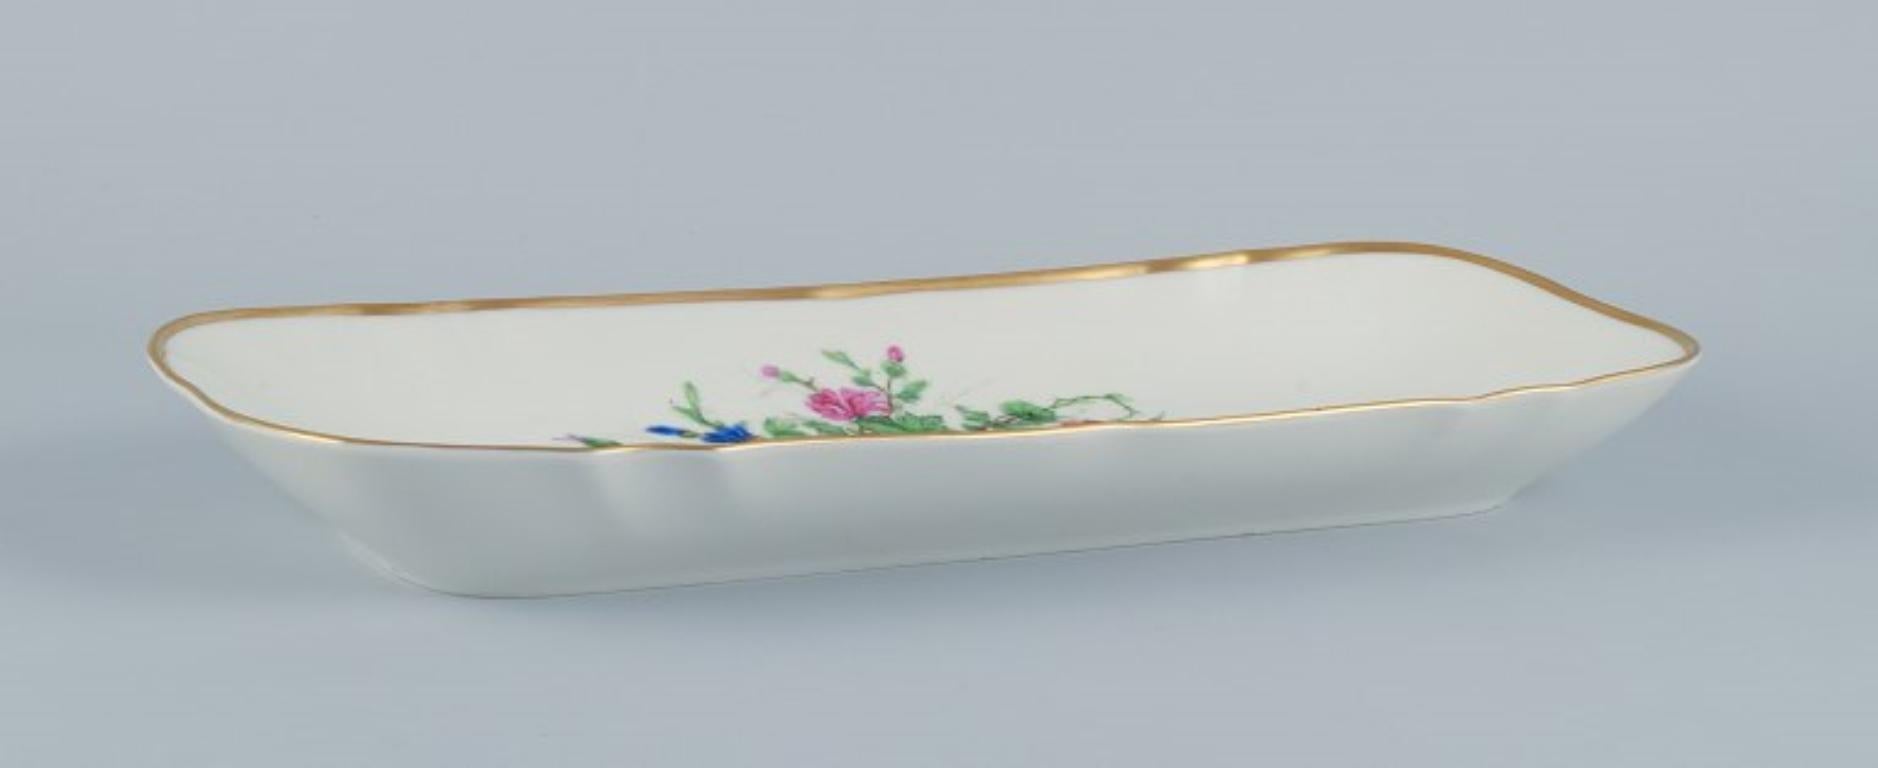 Bing & Grondahl, große rechteckige Platte, handbemalt mit polychromen Blumenmotiven und Goldverzierung.
Ungefähr in den 1920er Jahren.
Markiert.
Erste Fabrikqualität.
Perfekter Zustand.
Abmessungen: Länge 38,0 cm x Breite 15,5 cm x Höhe 3,9 cm.